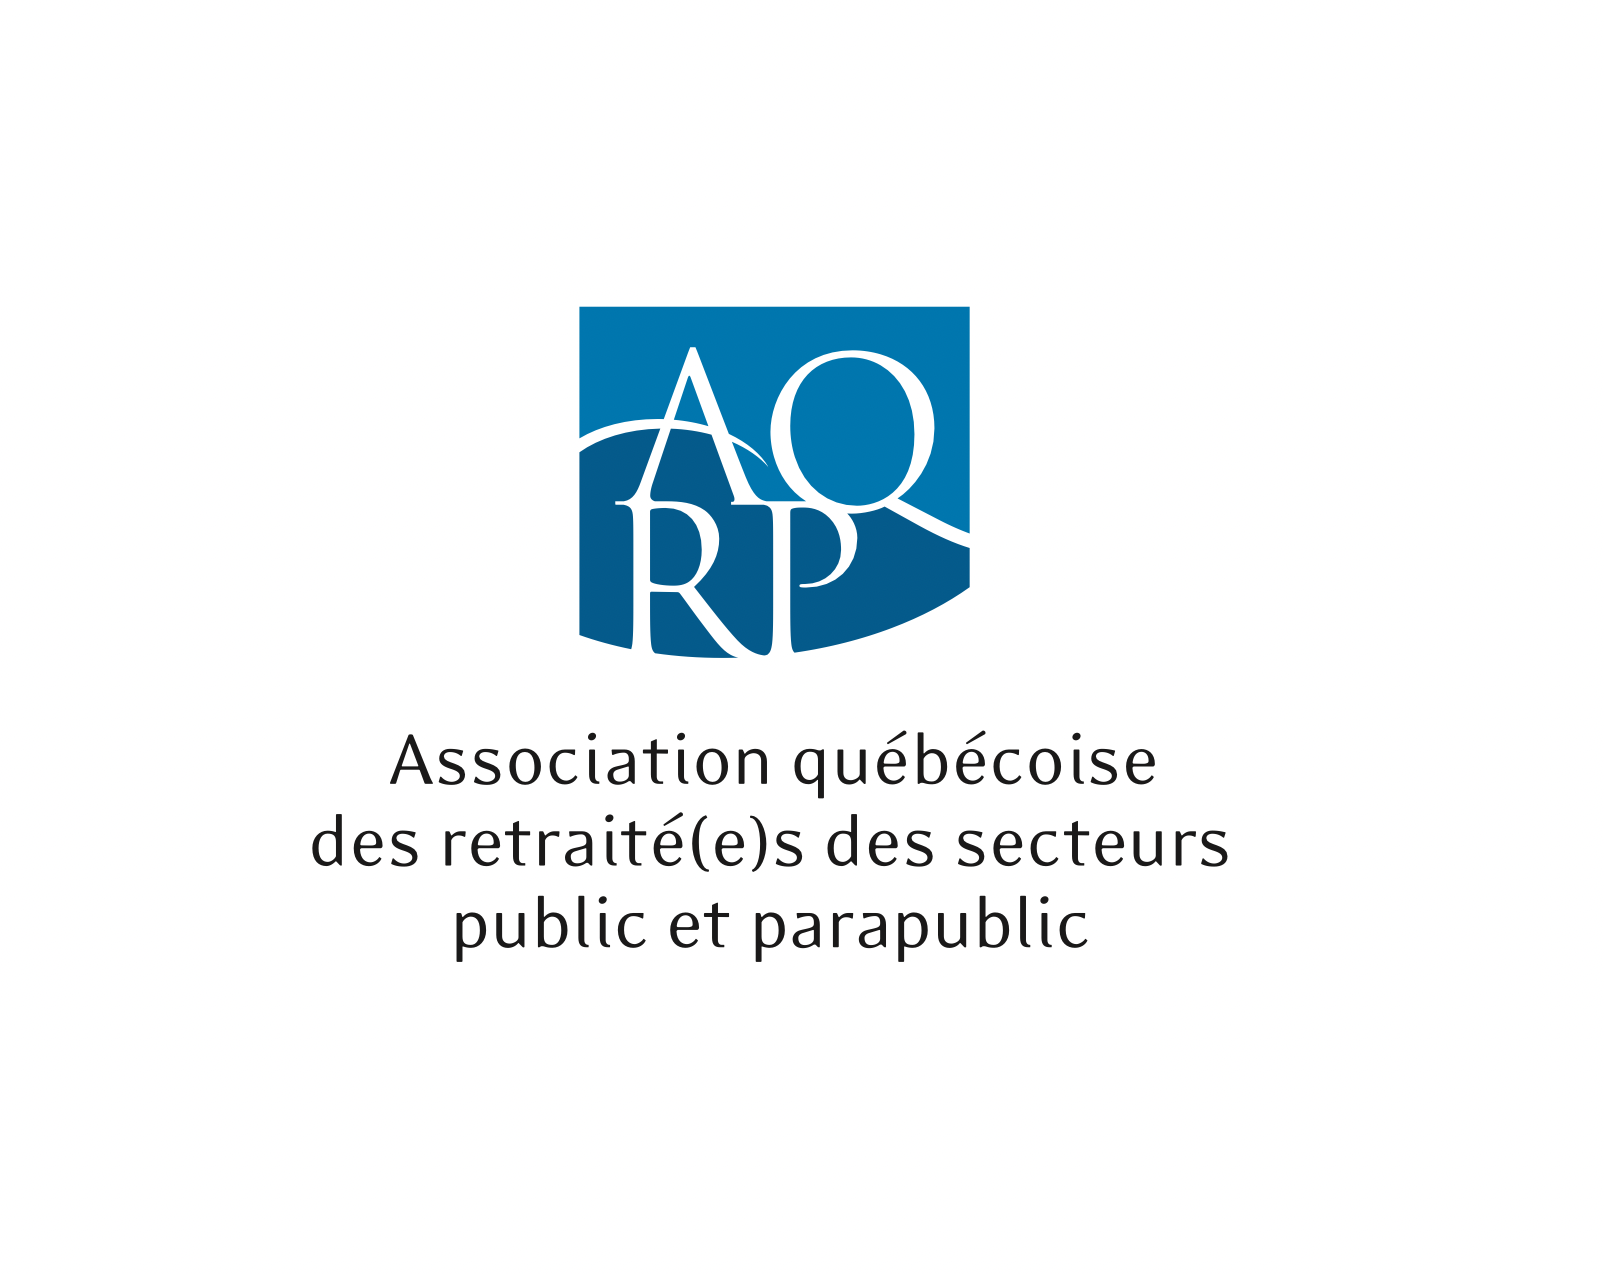 Association québécoise des retraité(e)s des secteurs public et parapublic